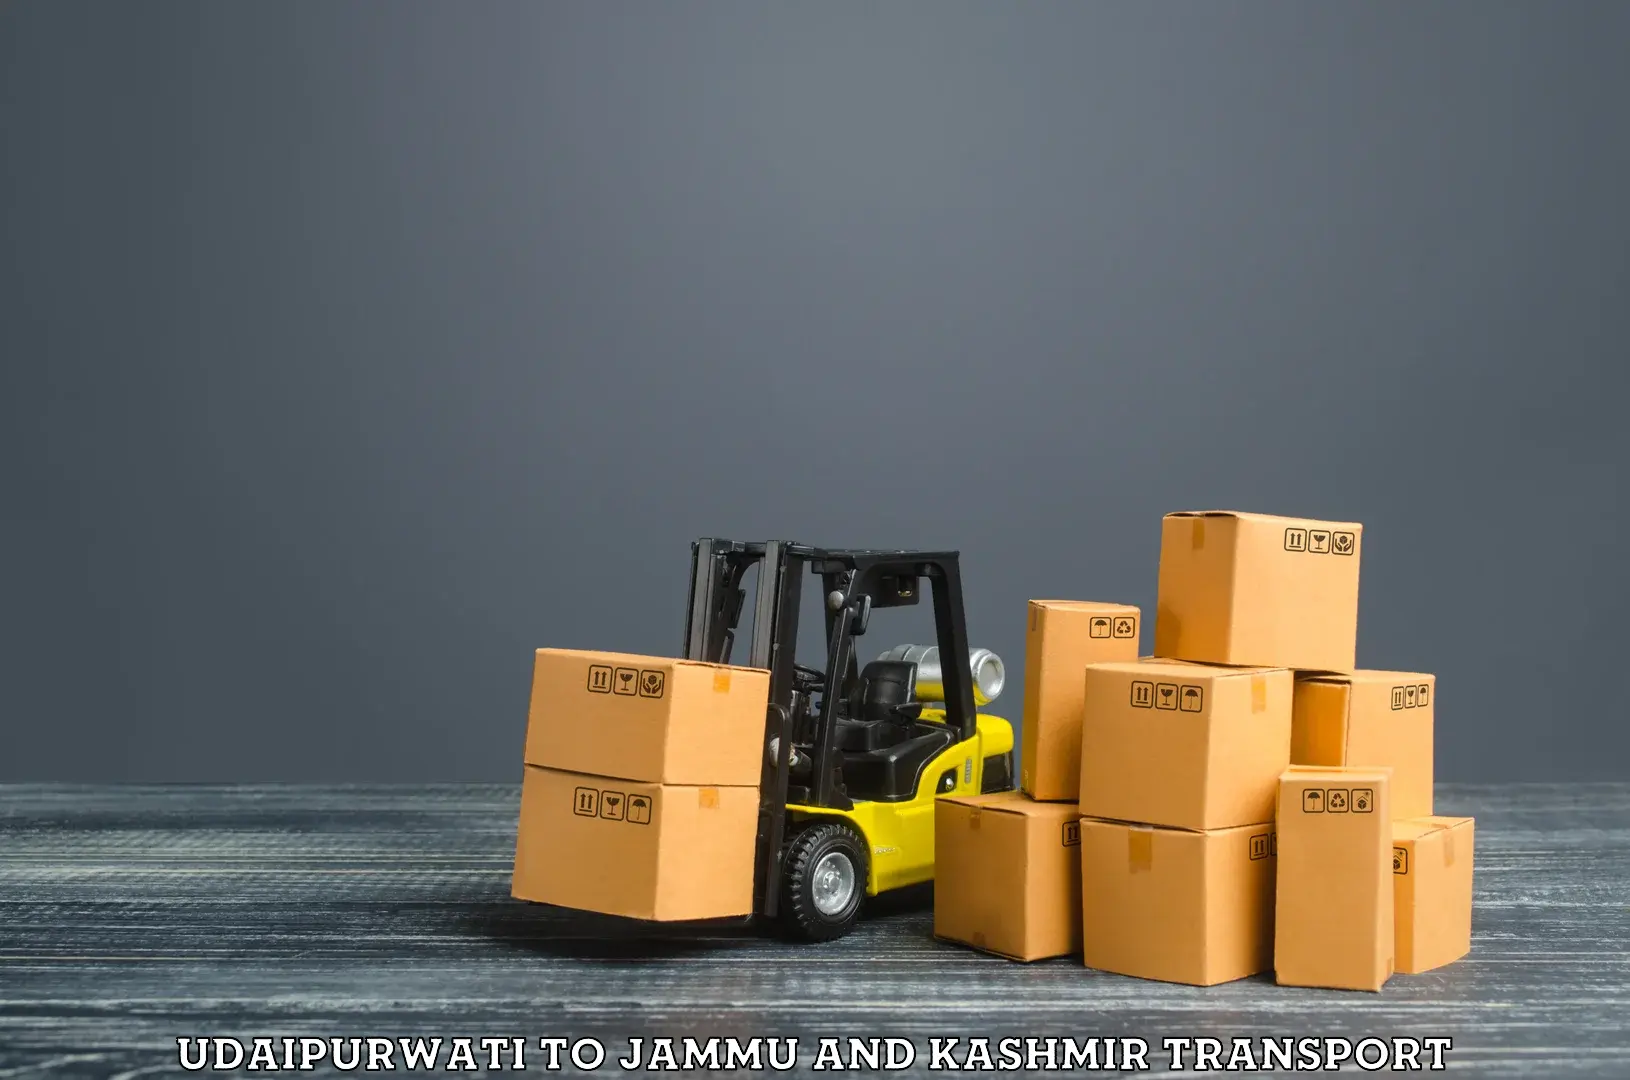 Shipping partner Udaipurwati to Jammu